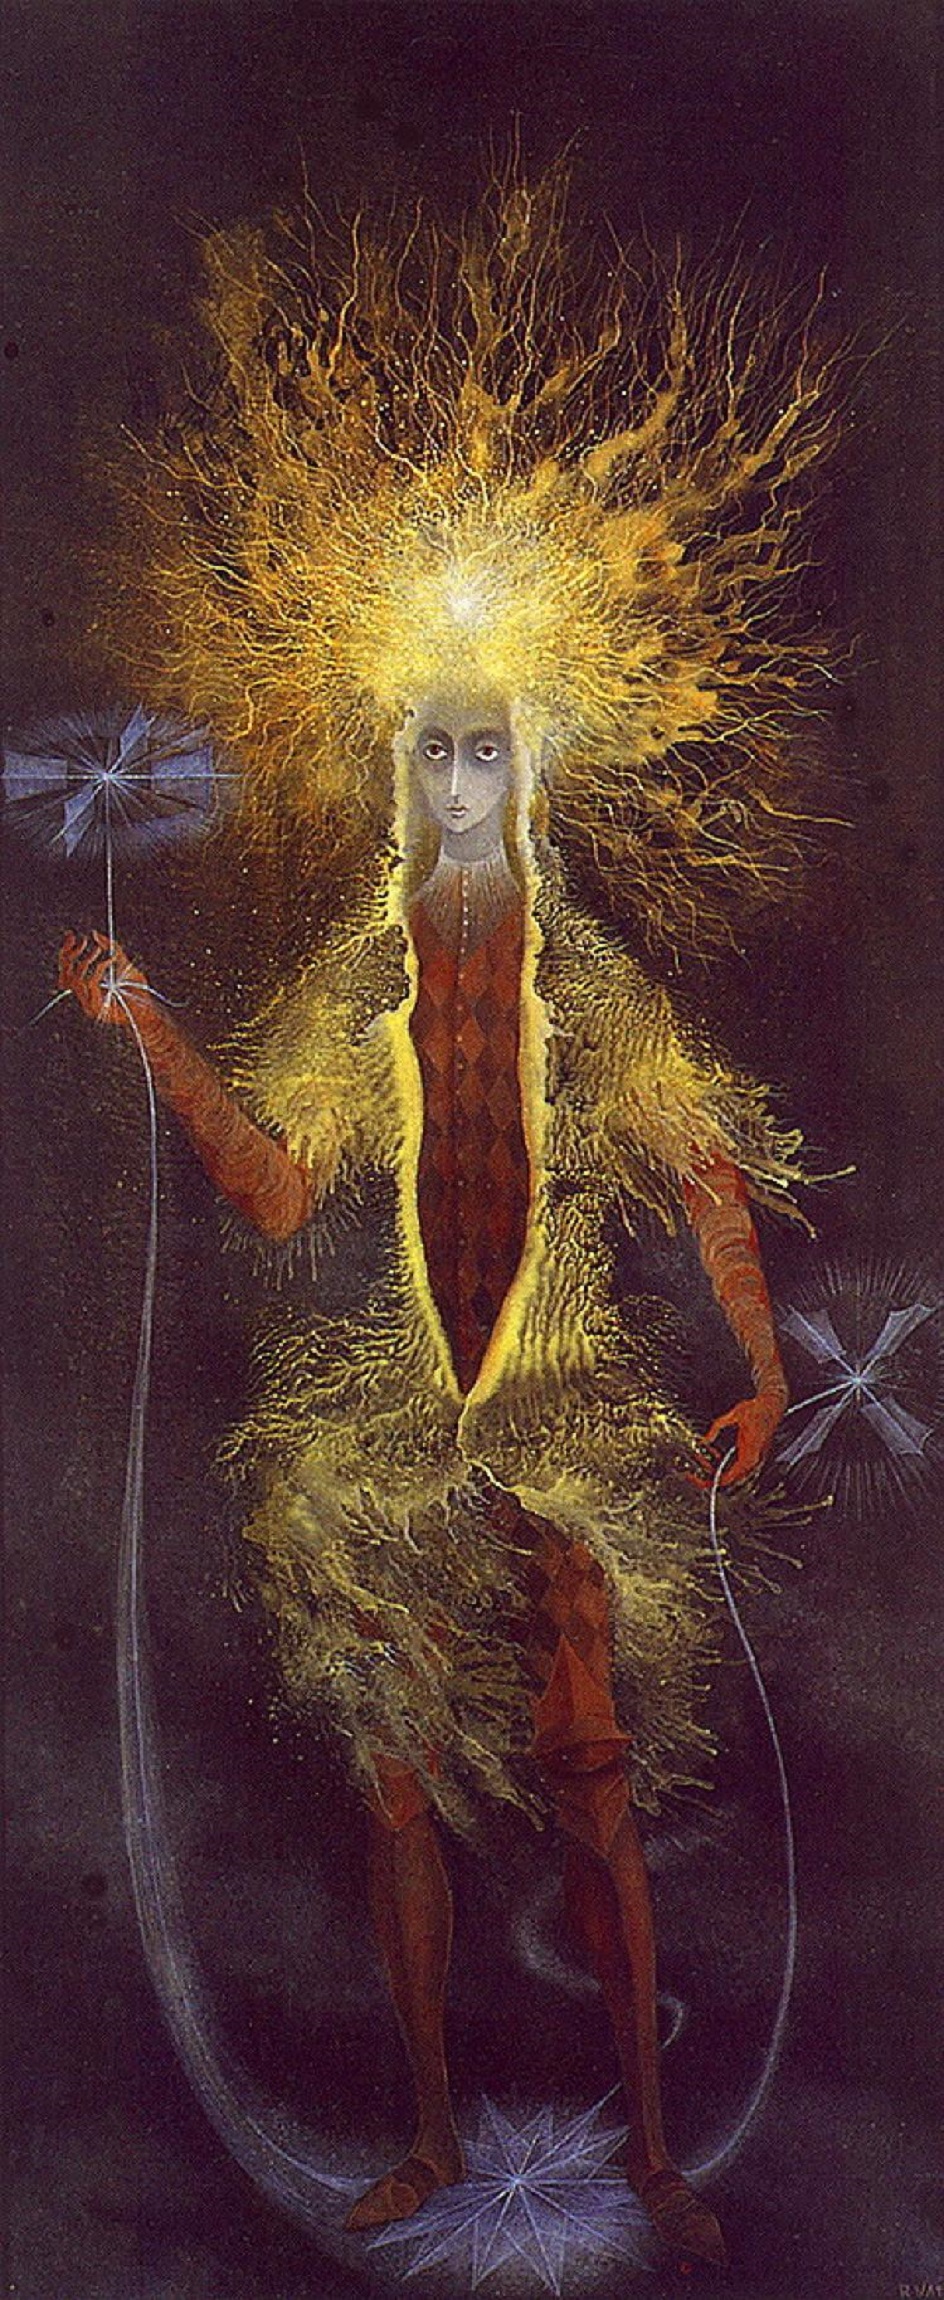 Ремедиос Варо. Картина «Житель астрала», 1961